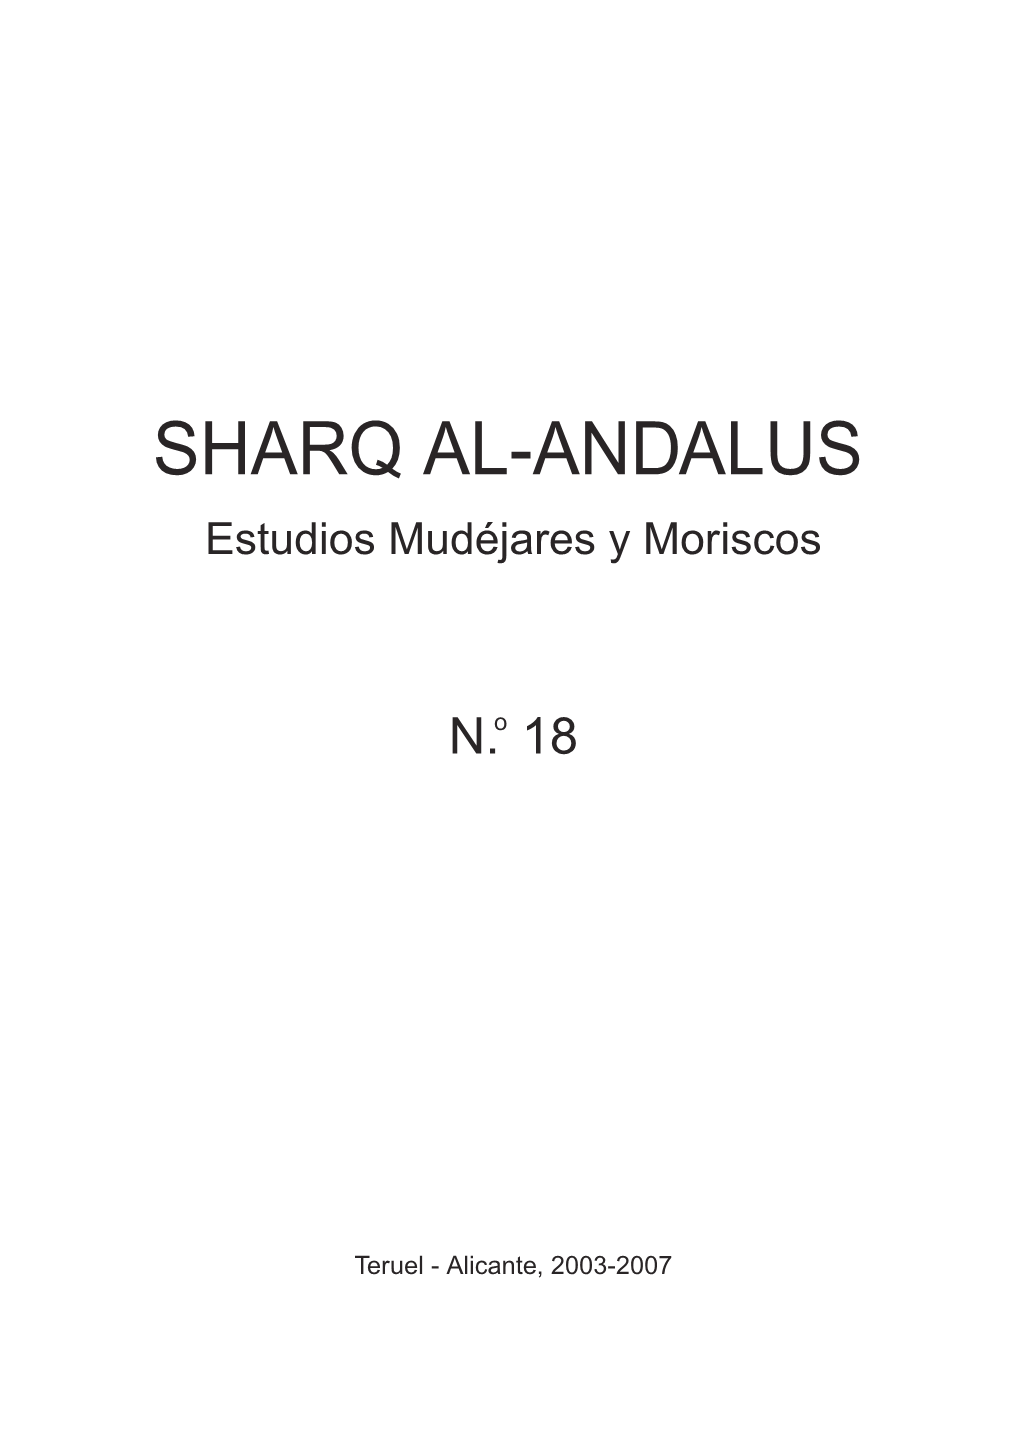 SHARQ AL-ANDALUS Estudios Mudéjares Y Moriscos